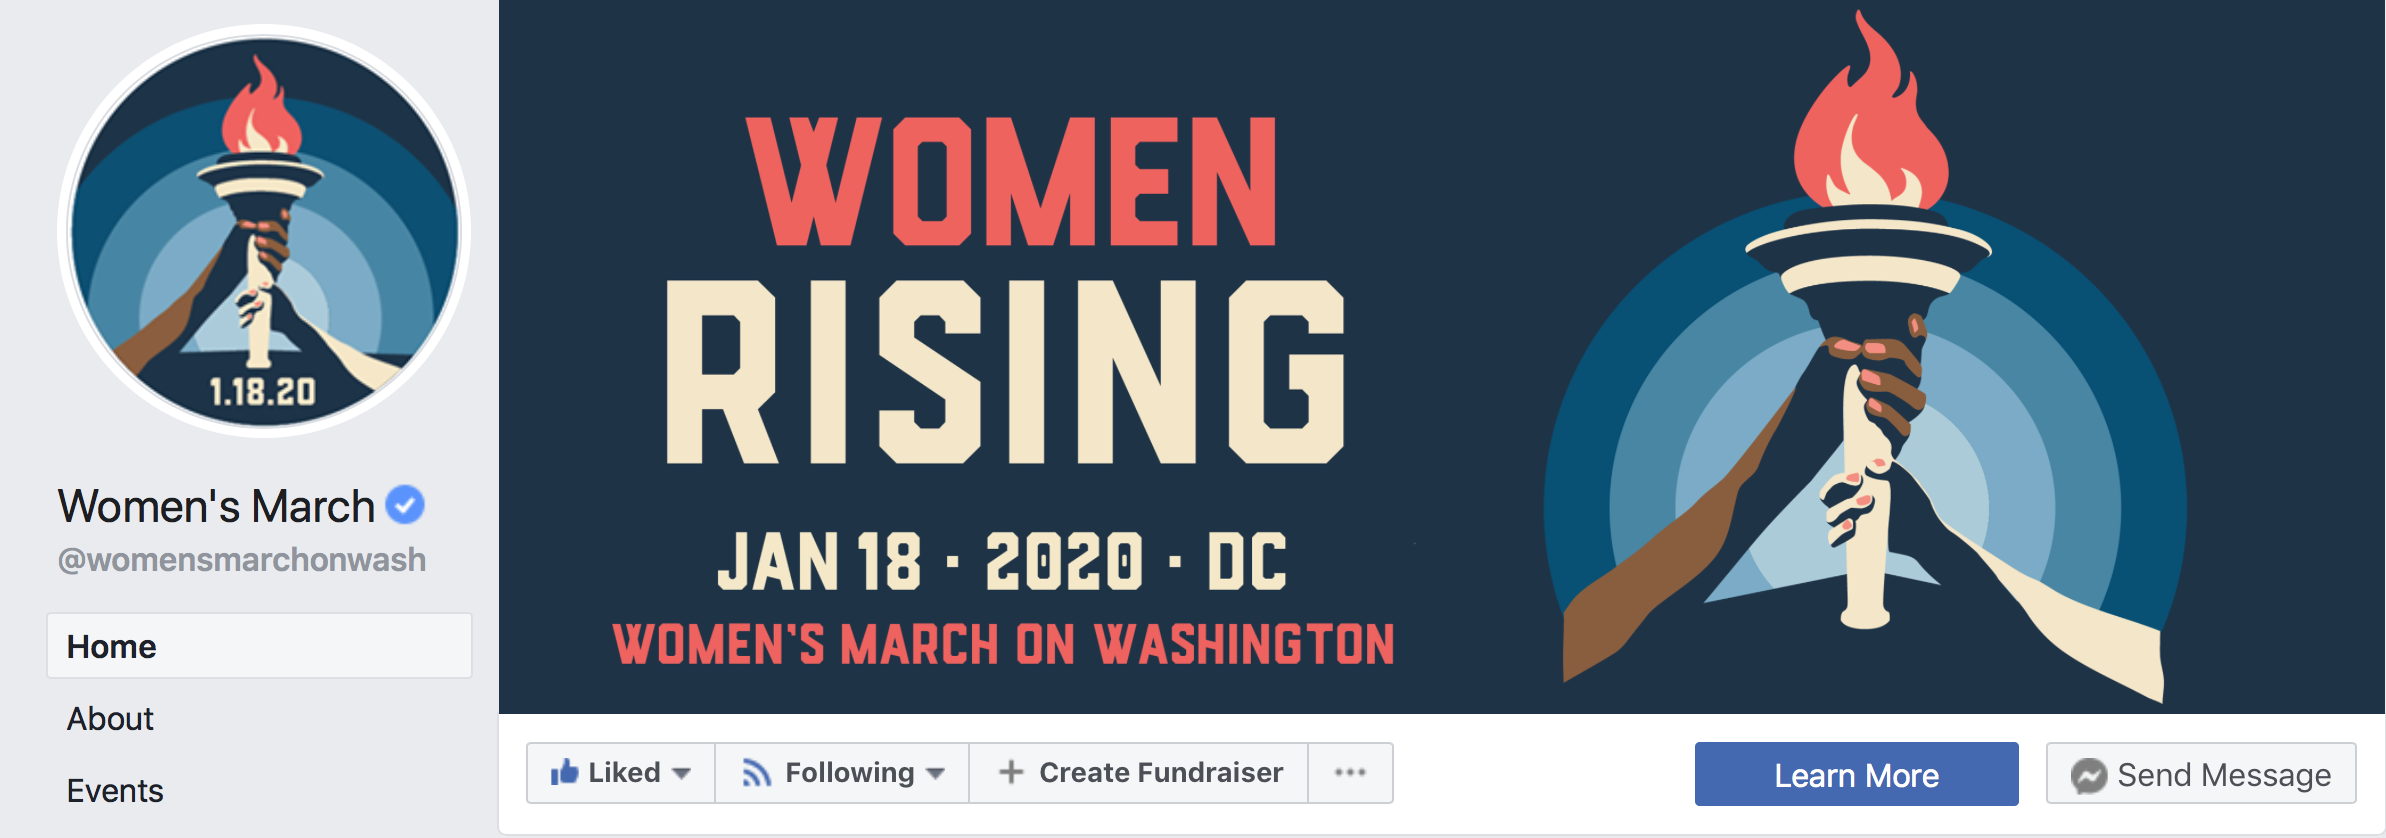 Women Rising facebook graphics design